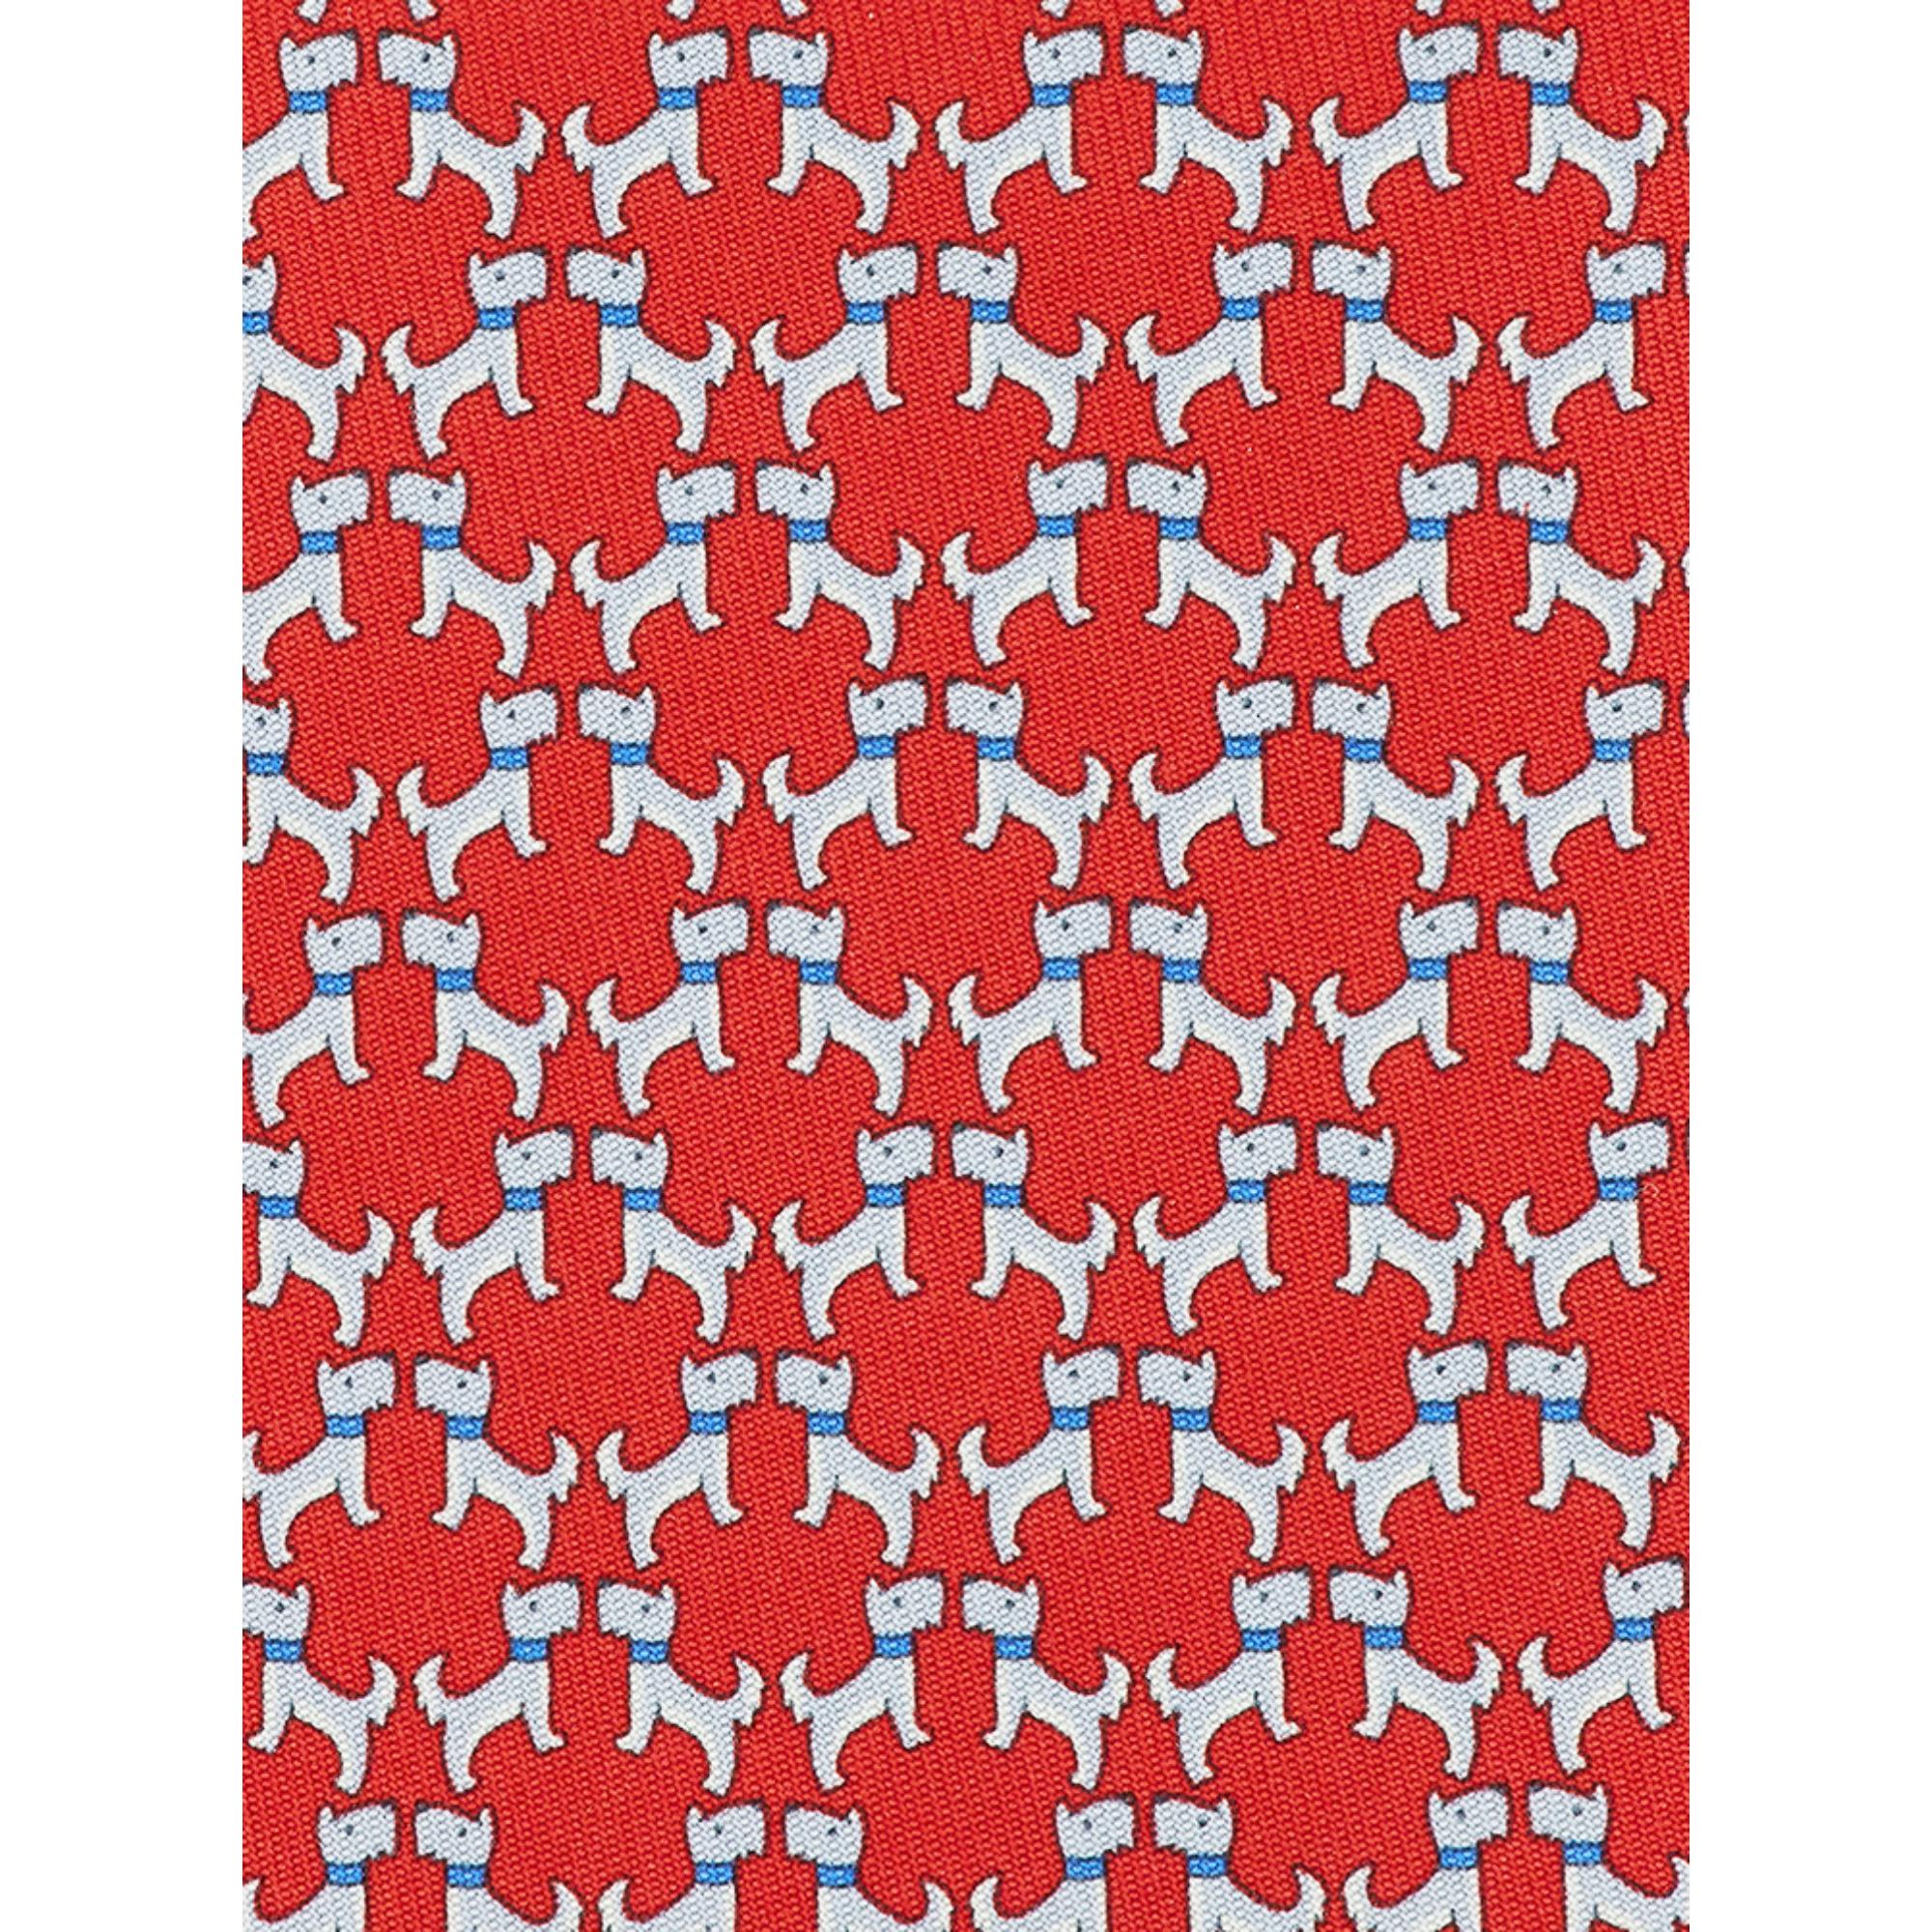 Terrier Print Silk Tie - Red